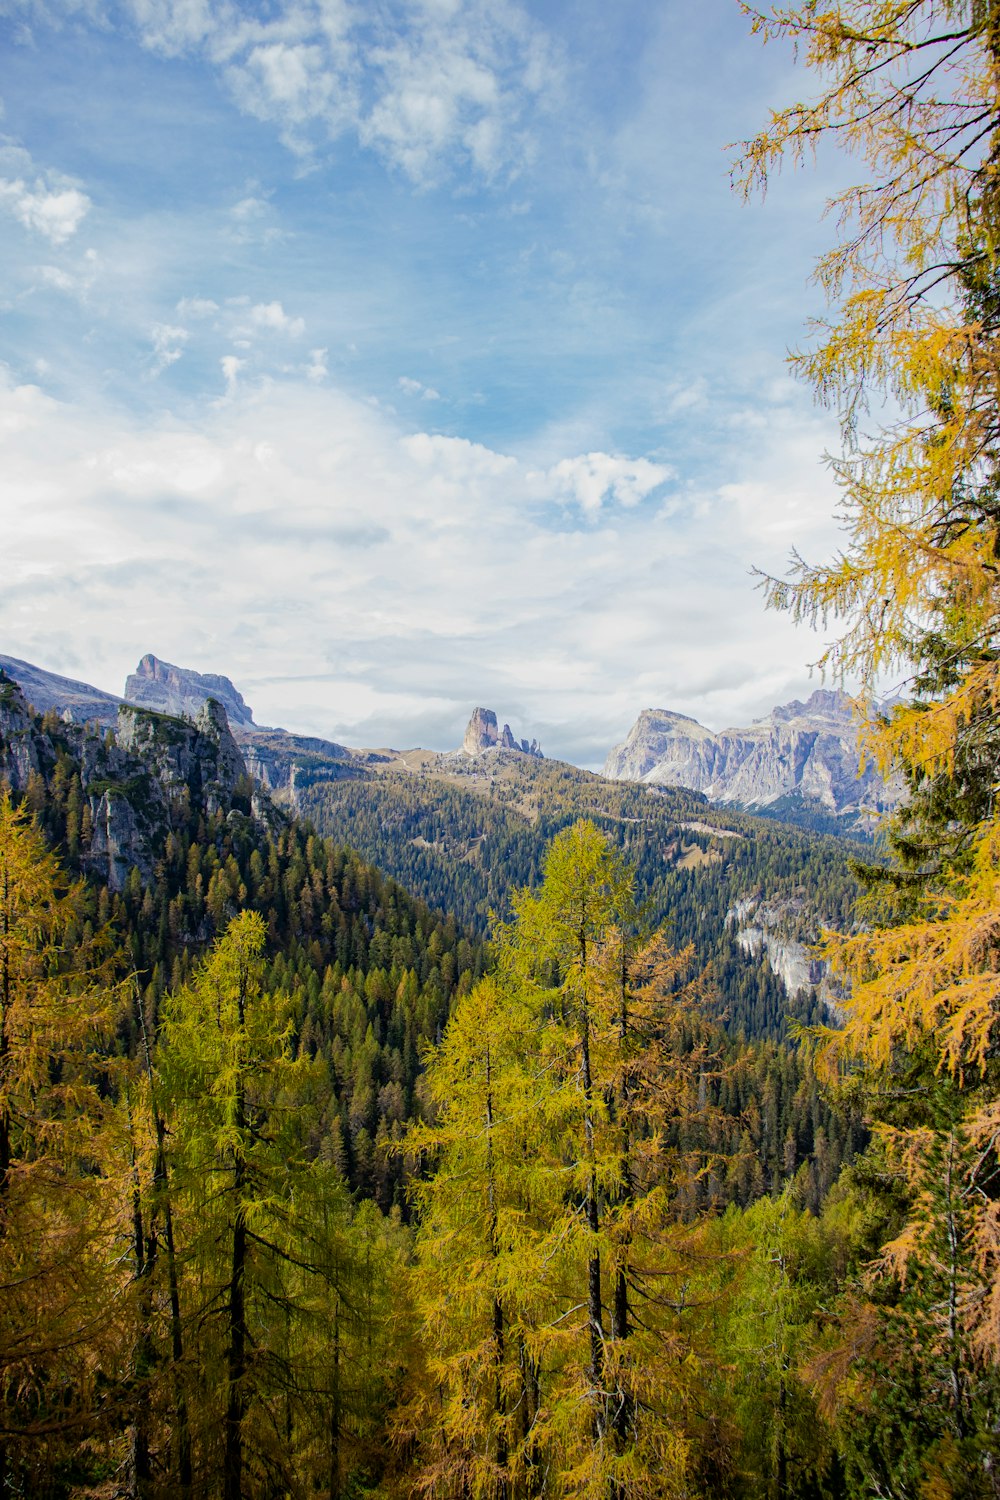 Una vista panorámica de una cadena montañosa con árboles en primer plano